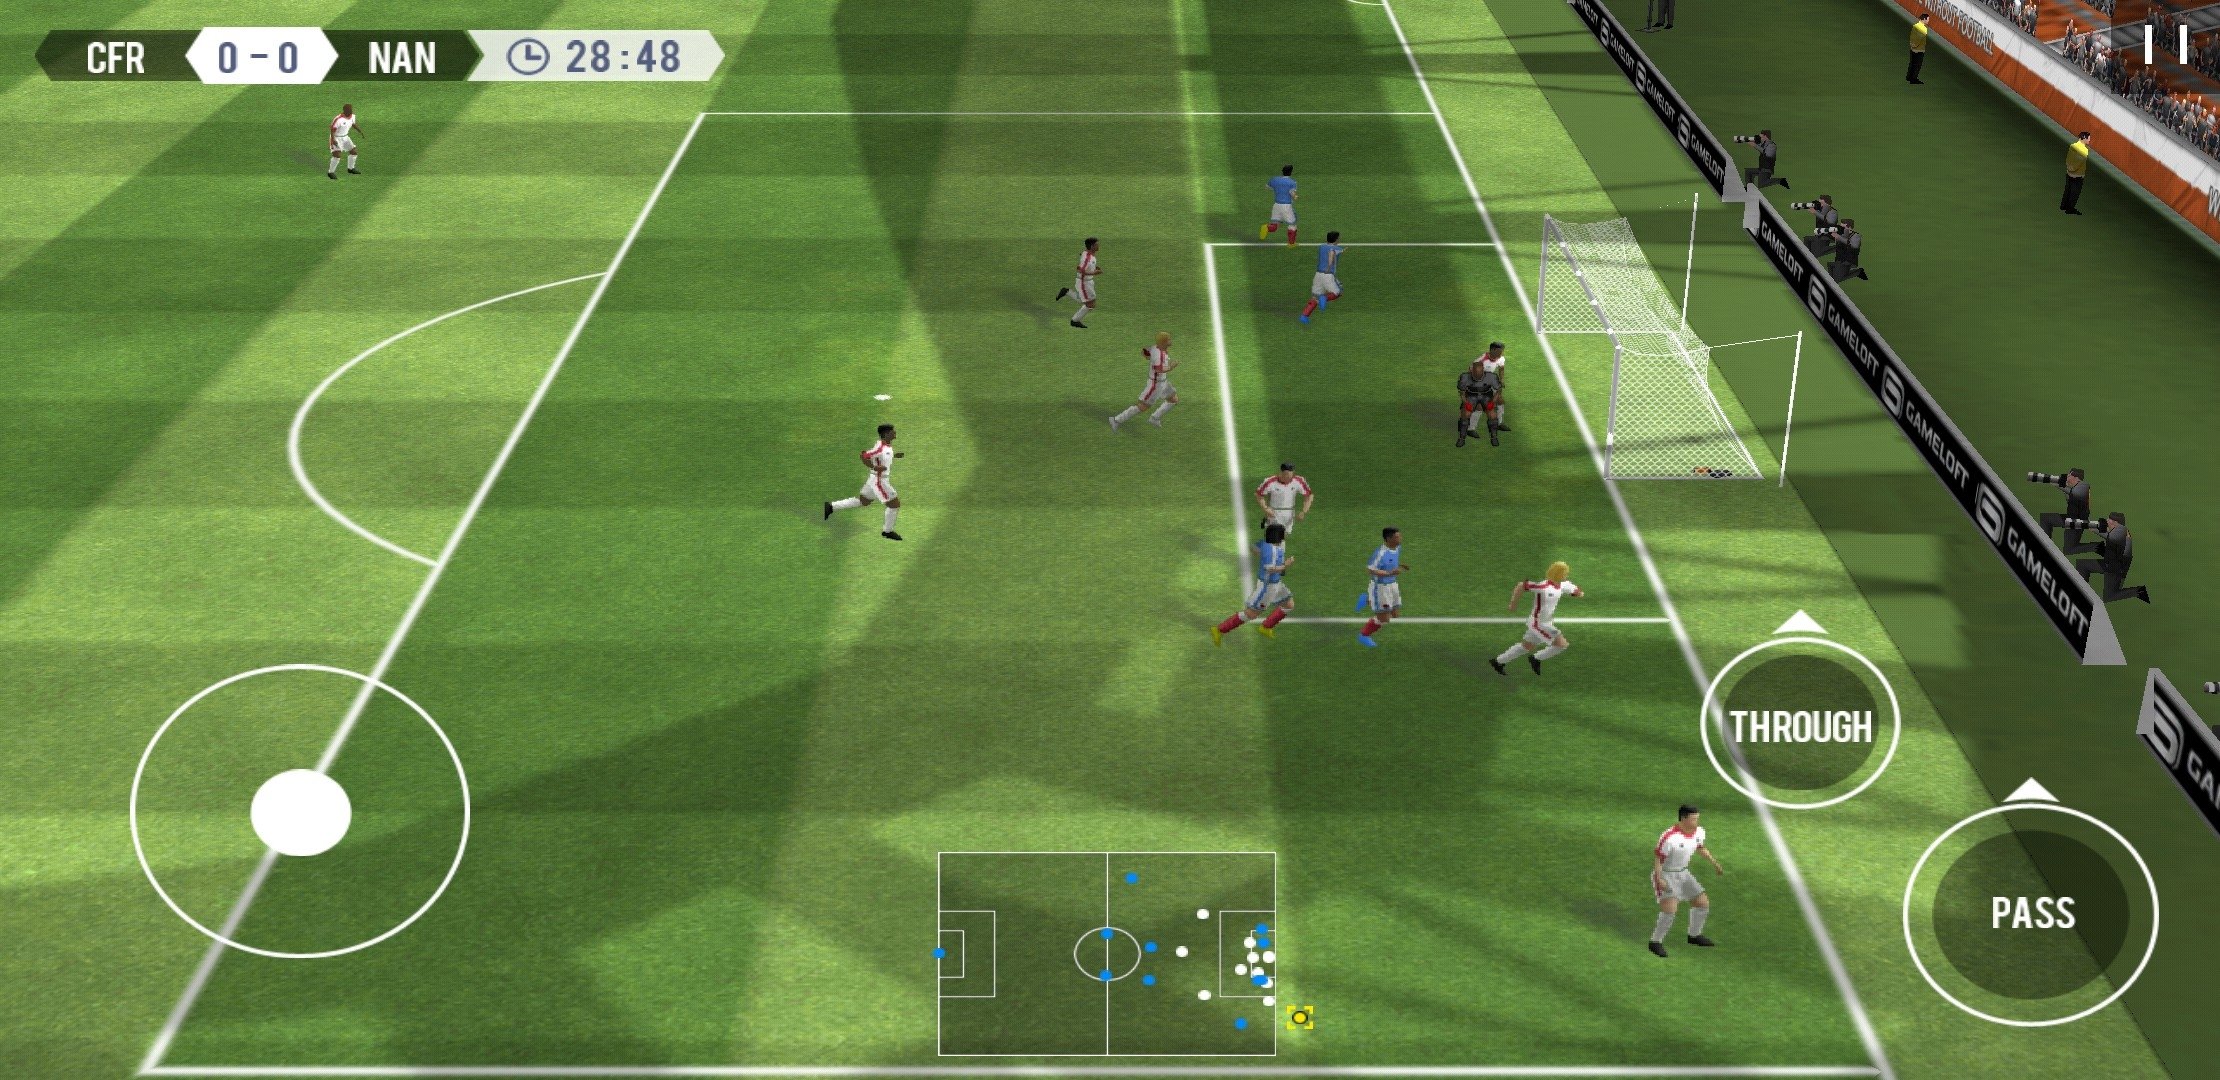 Jogar Futebol - Um jogo de futebol real - 3D